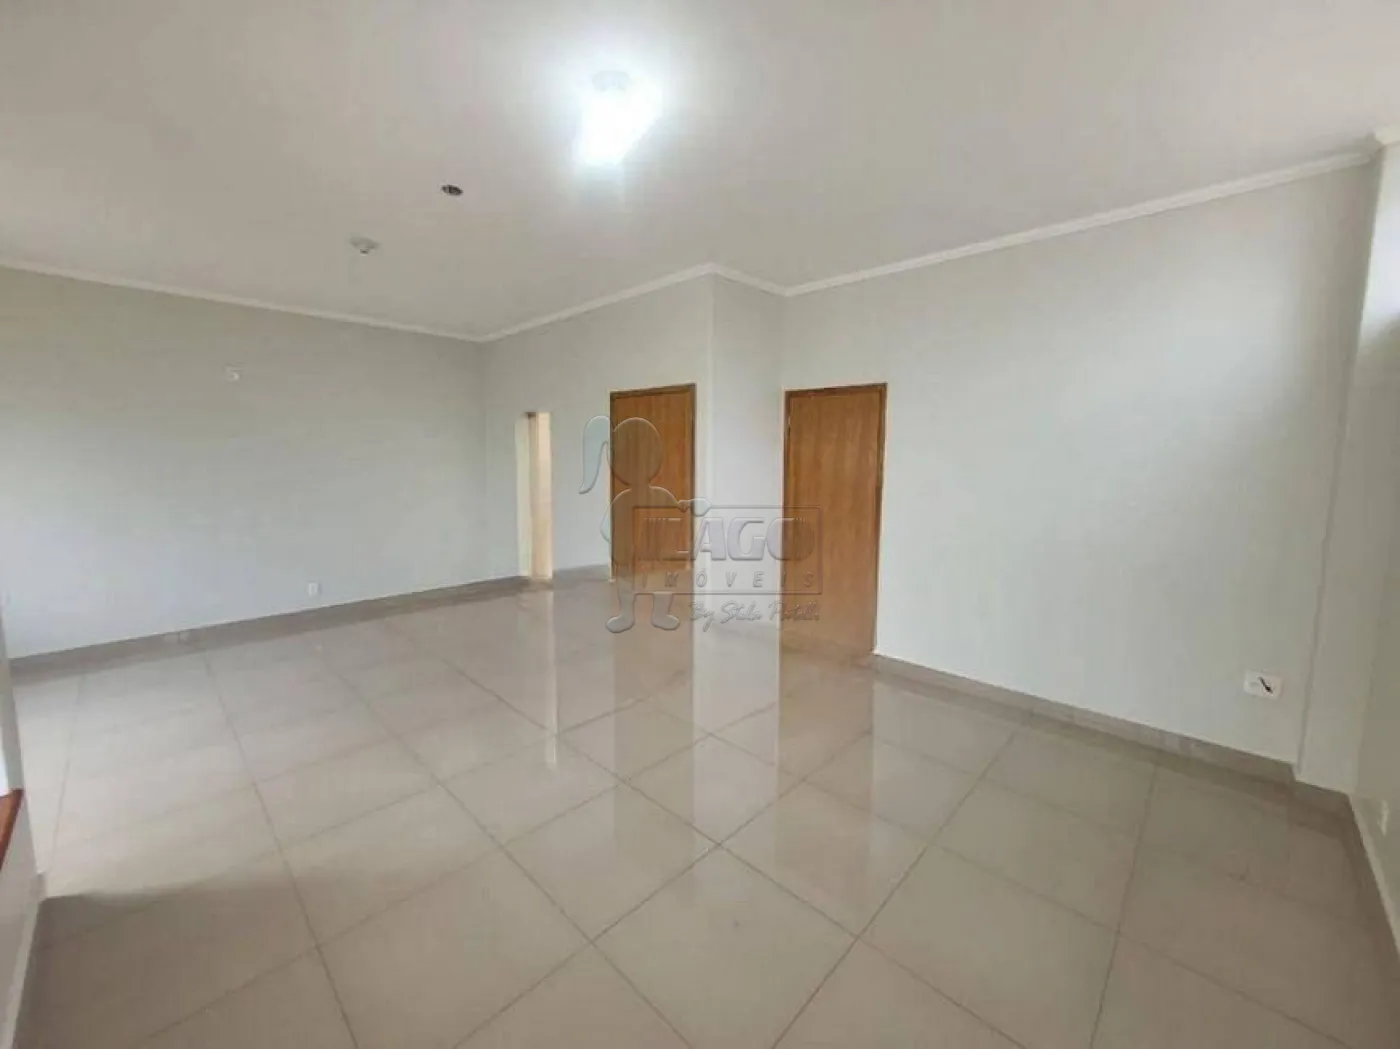 Alugar Casa / Padrão em Ribeirão Preto R$ 4.500,00 - Foto 1